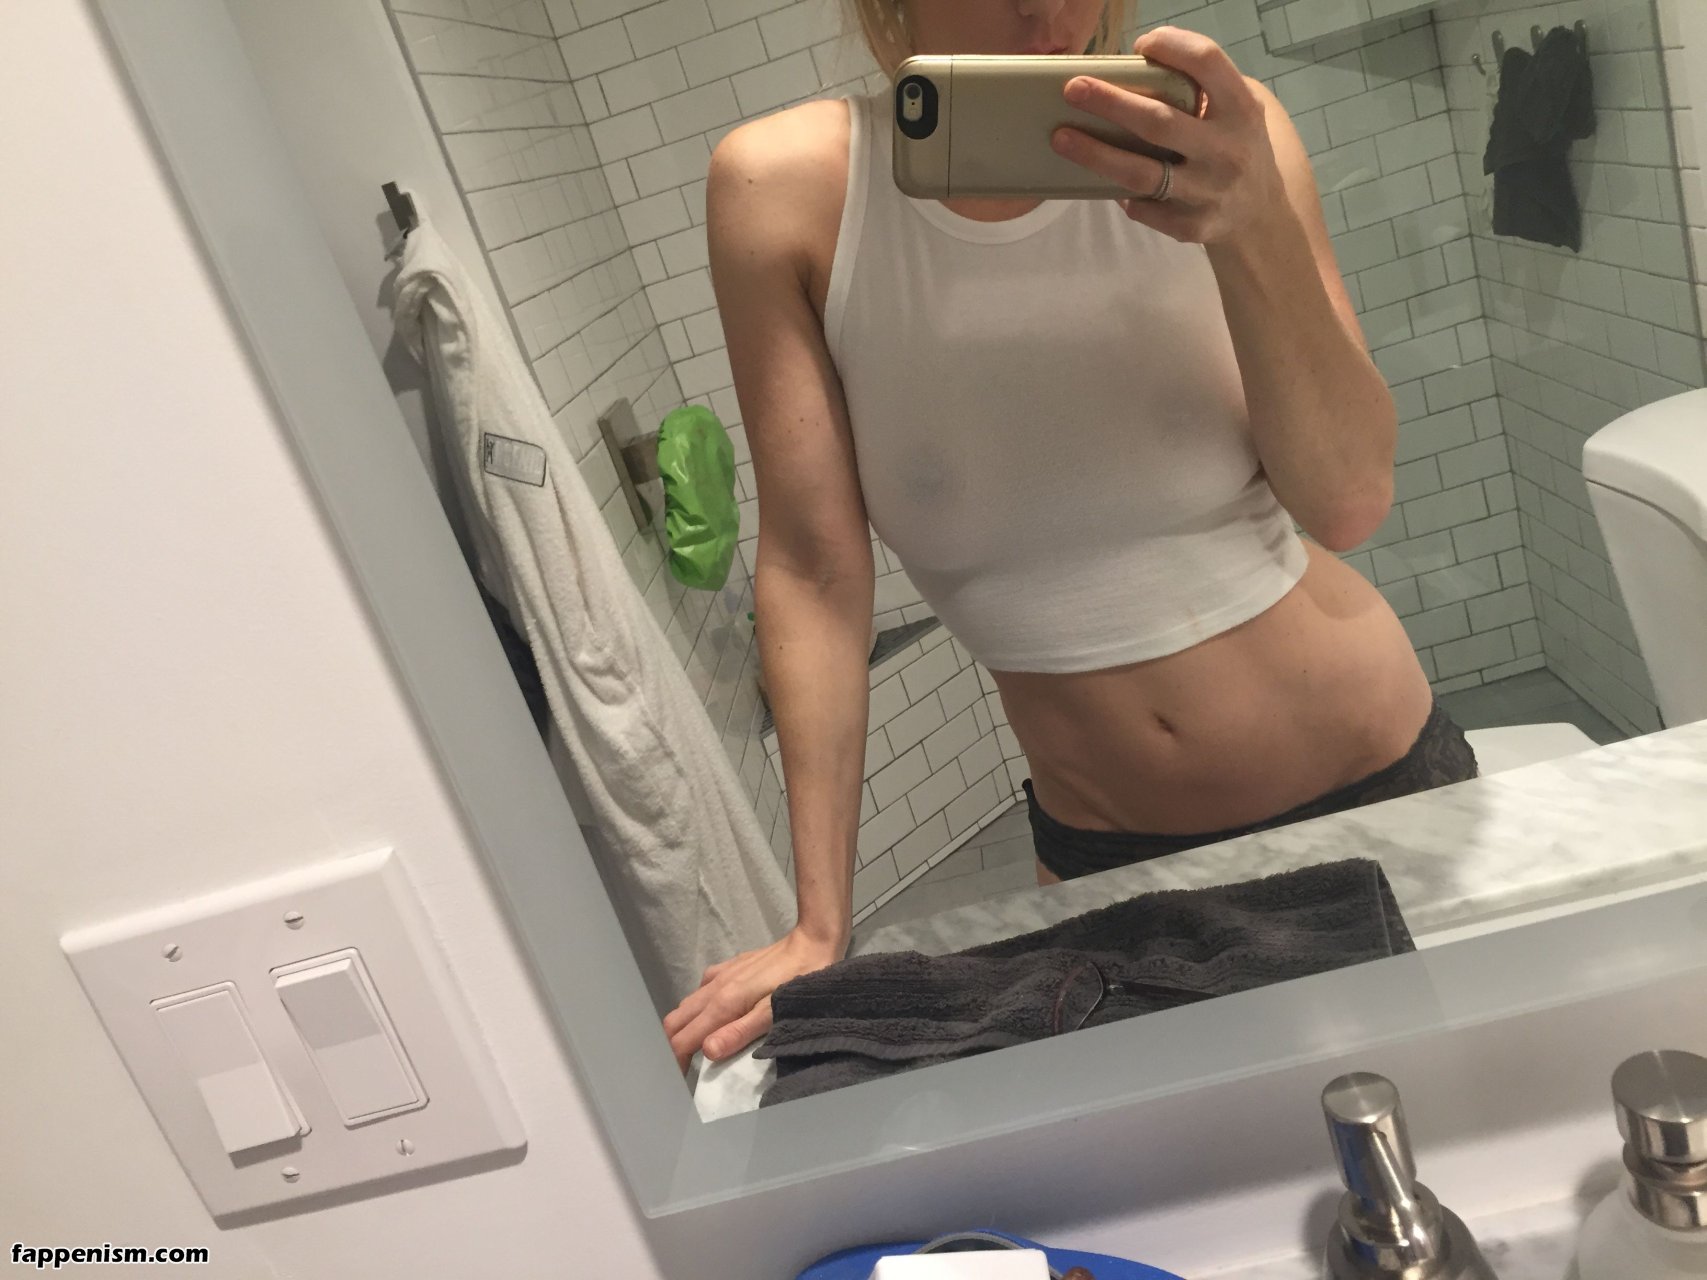 Iliza shlesinger naked pics